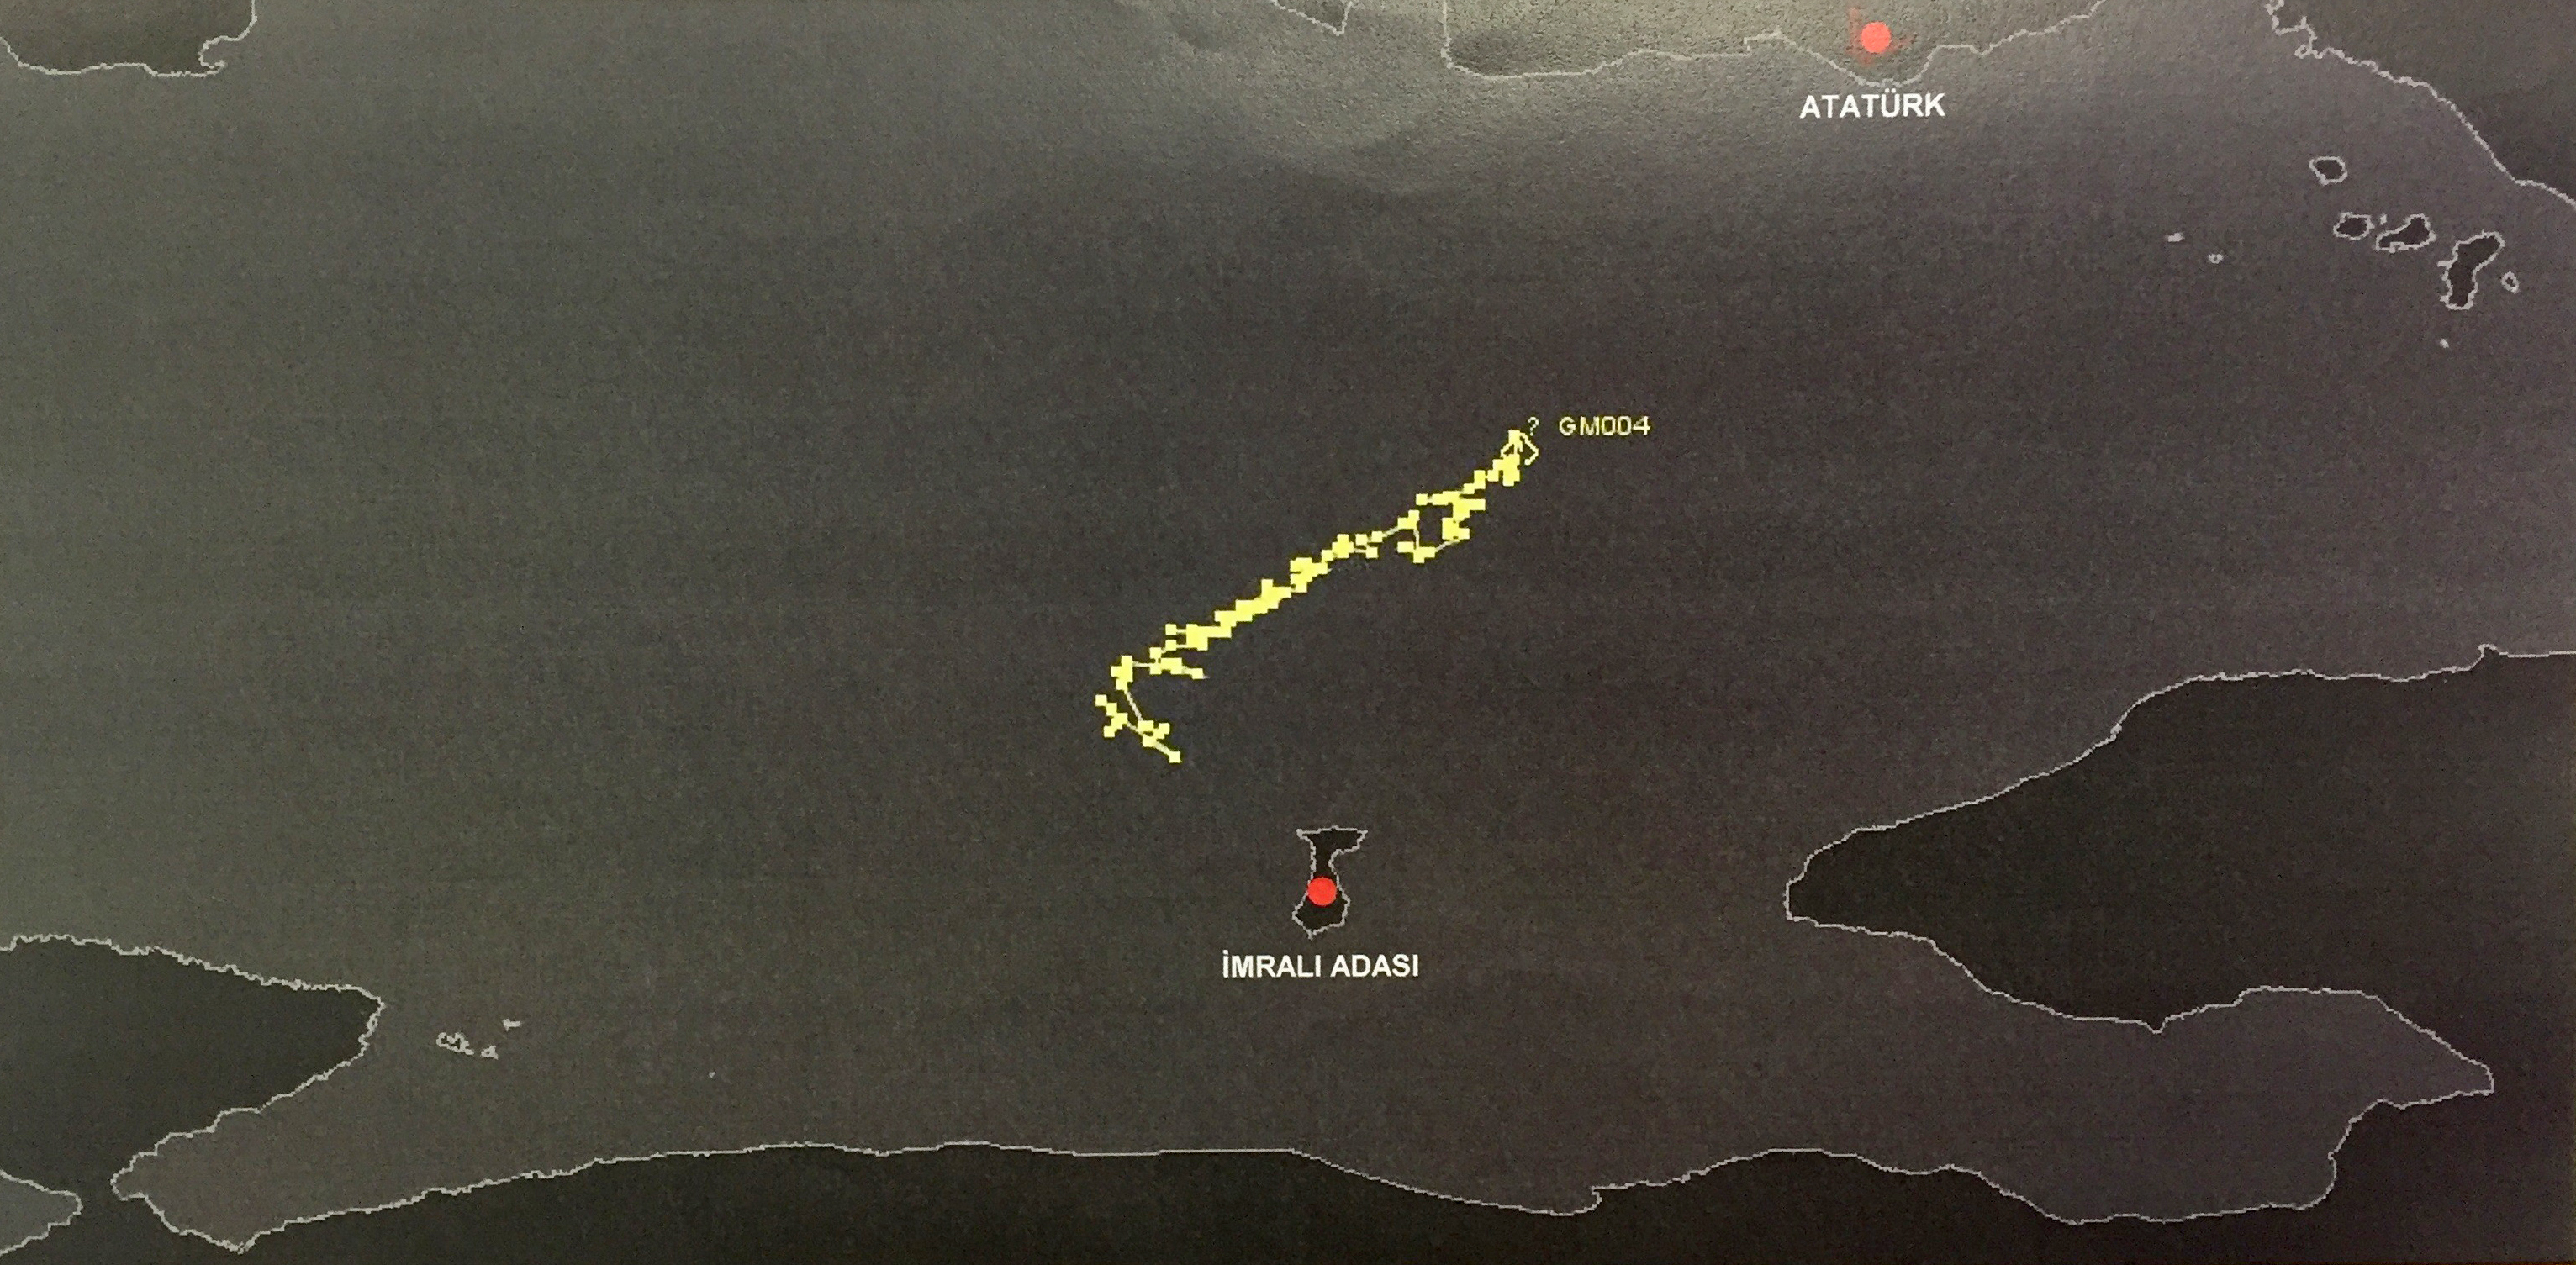 Было установлено, что вертолеты интенсивно летали вокруг острова Имралы. На записях воздушного движения видно, что разные вертолеты в разное время летали над островом Имралы.